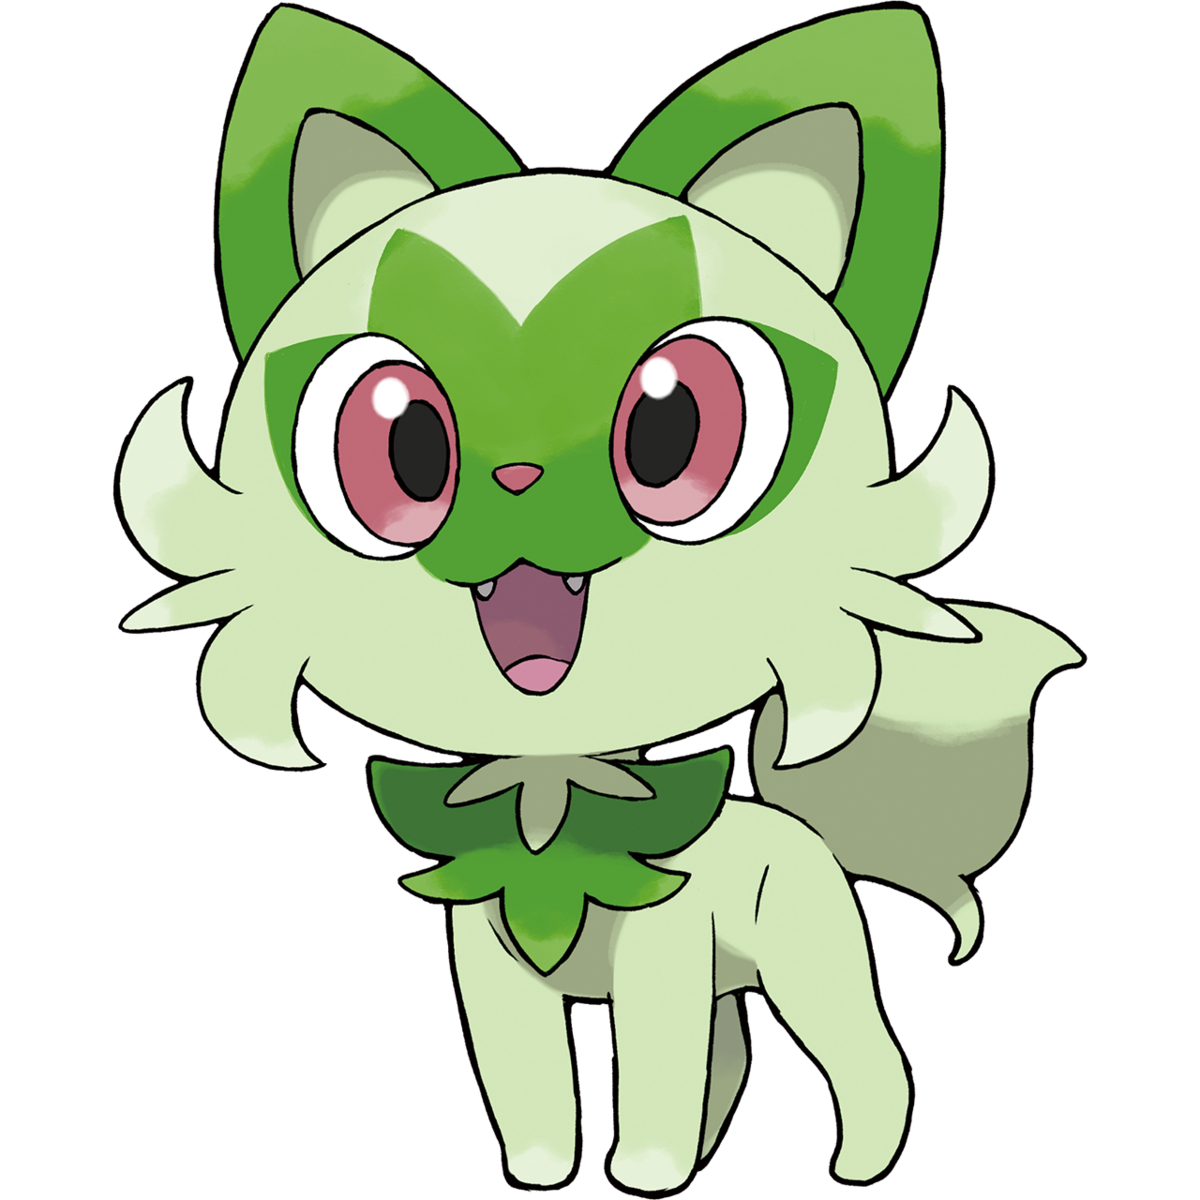 Sprigatito - Pokémon Central Wiki